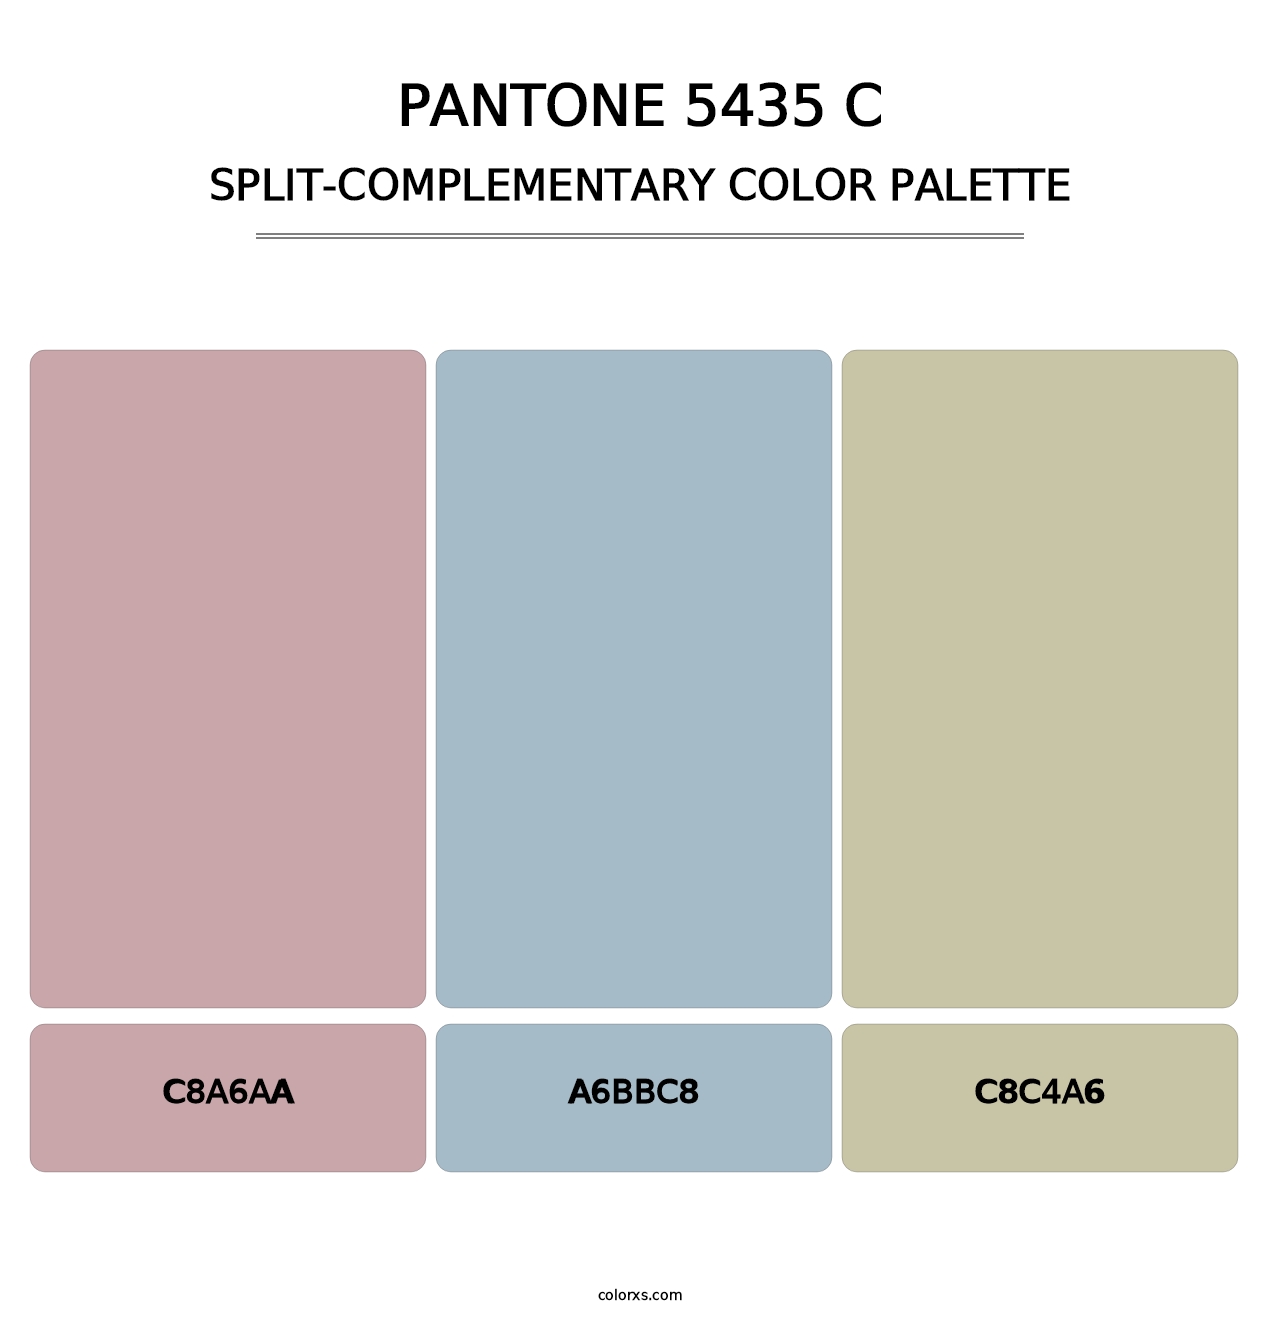 PANTONE 5435 C - Split-Complementary Color Palette